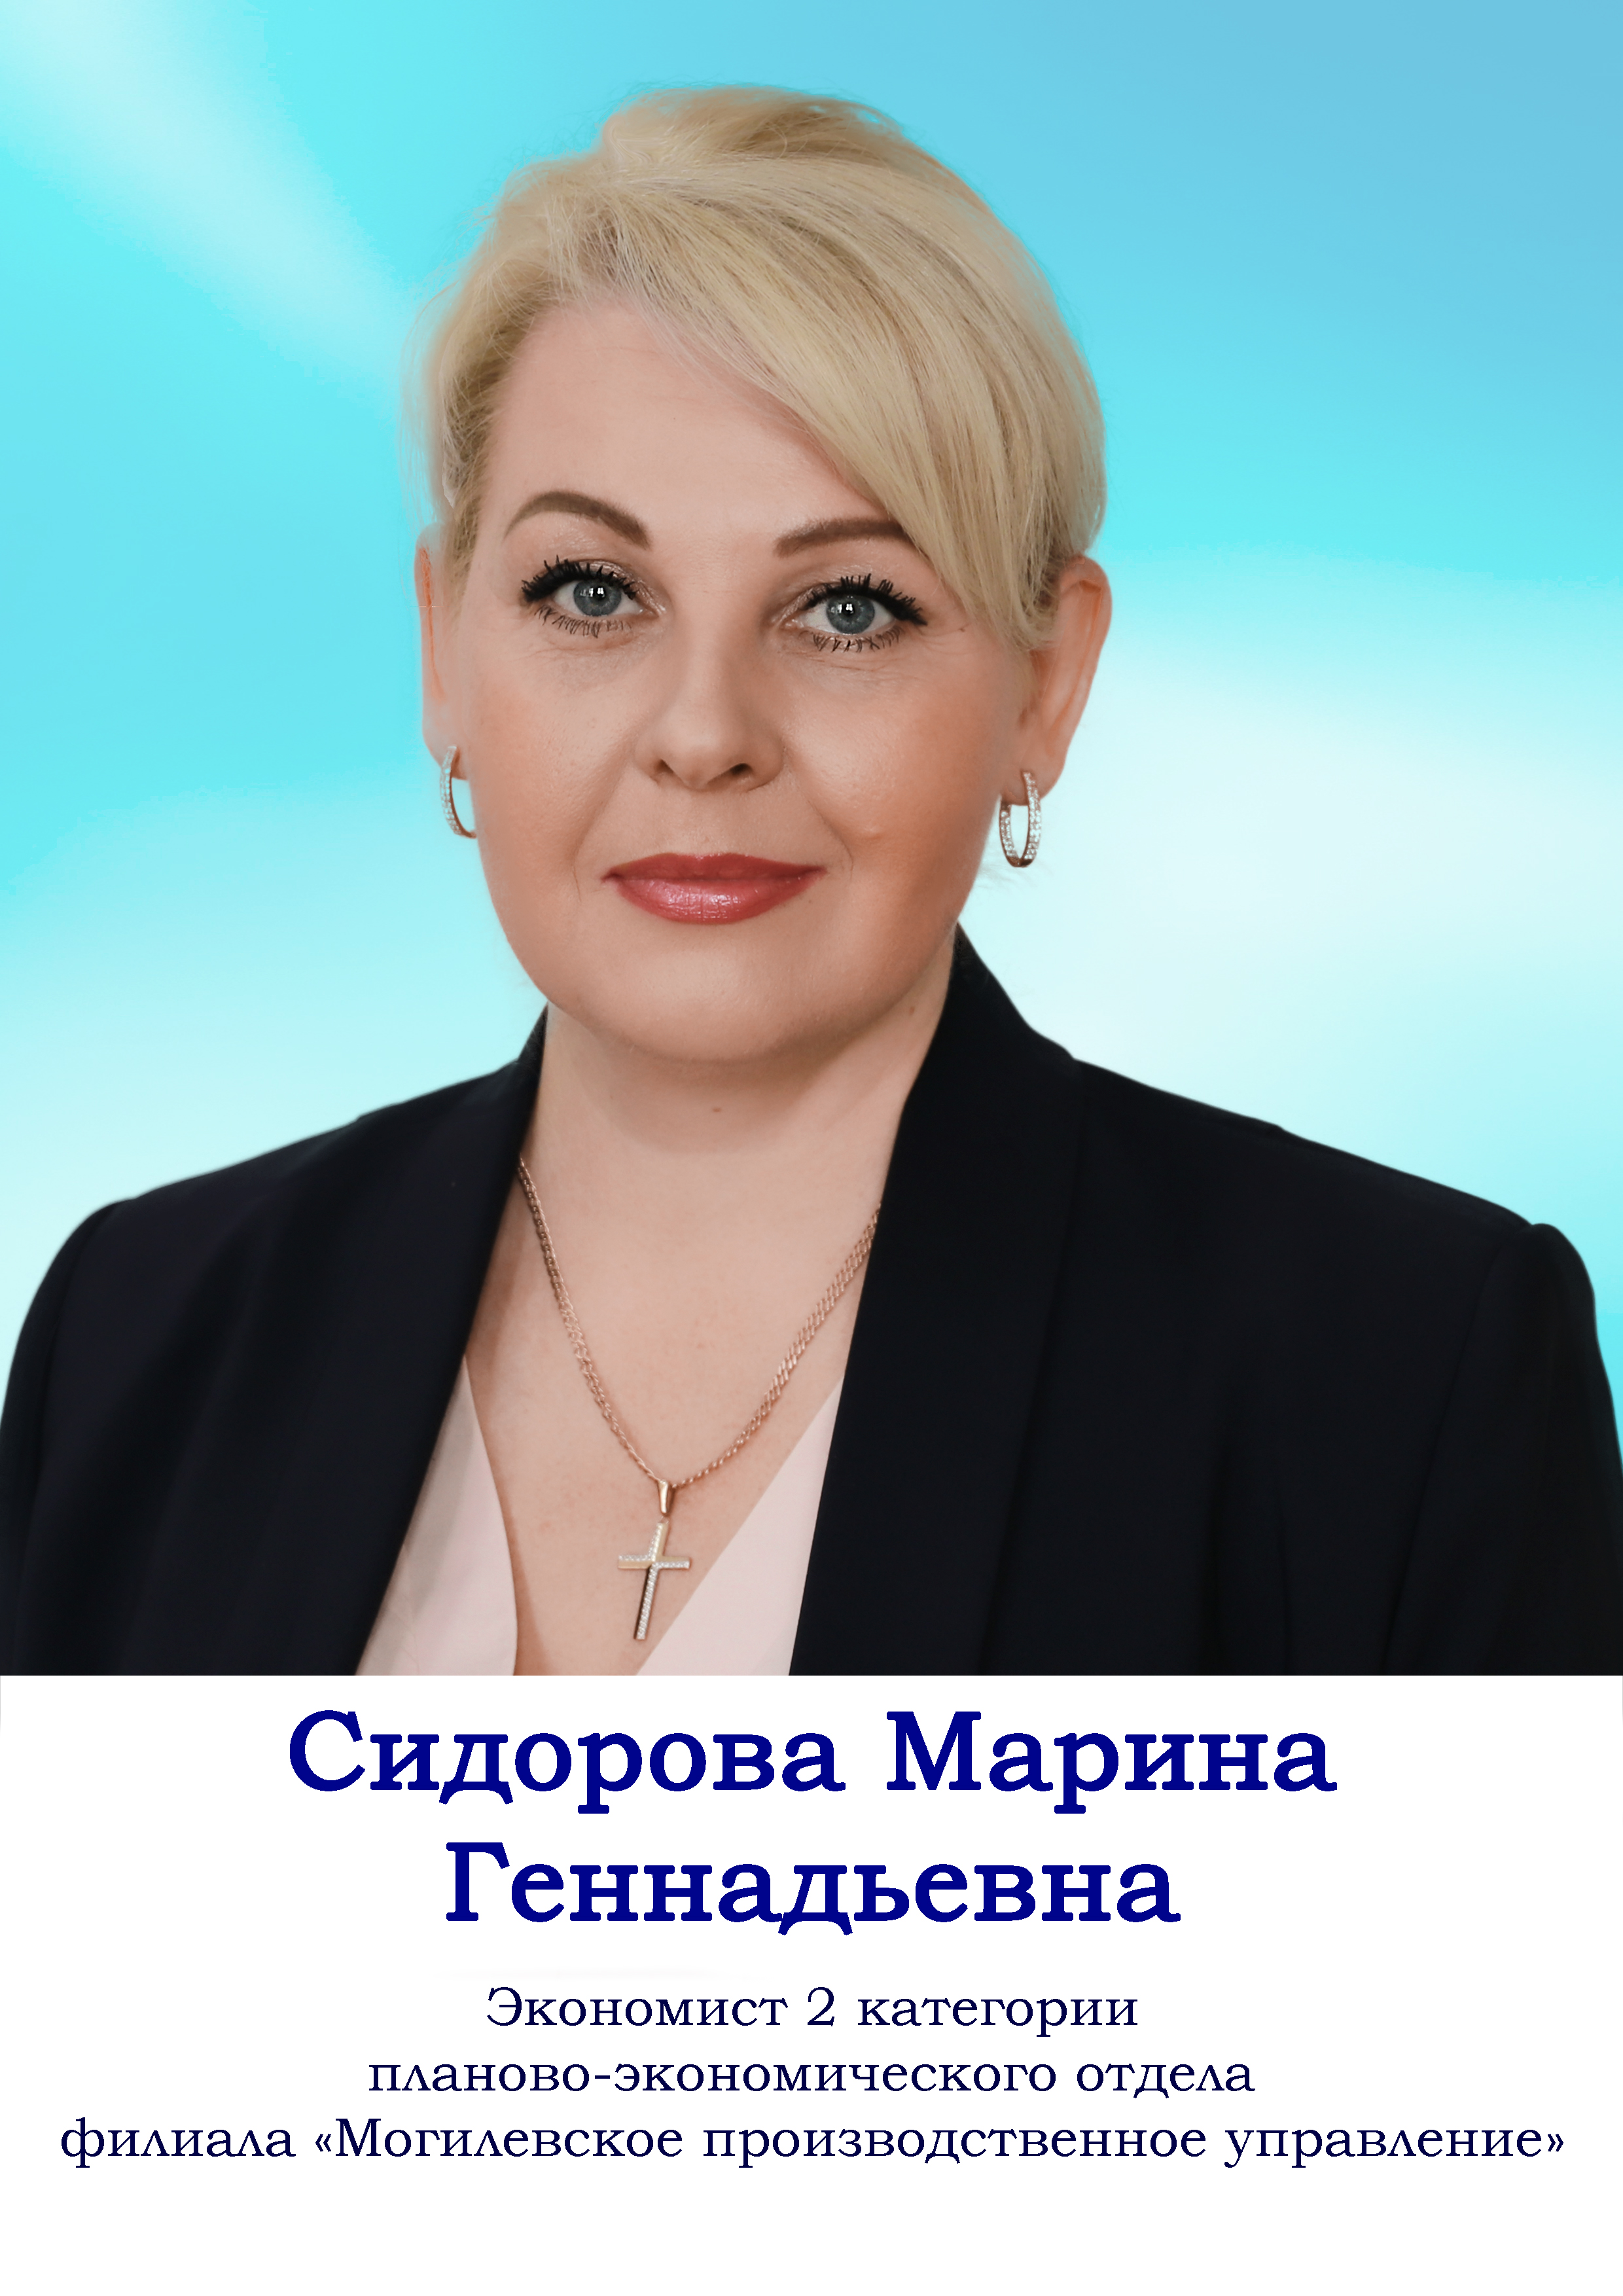 Сидорова Марина Геннадьевна